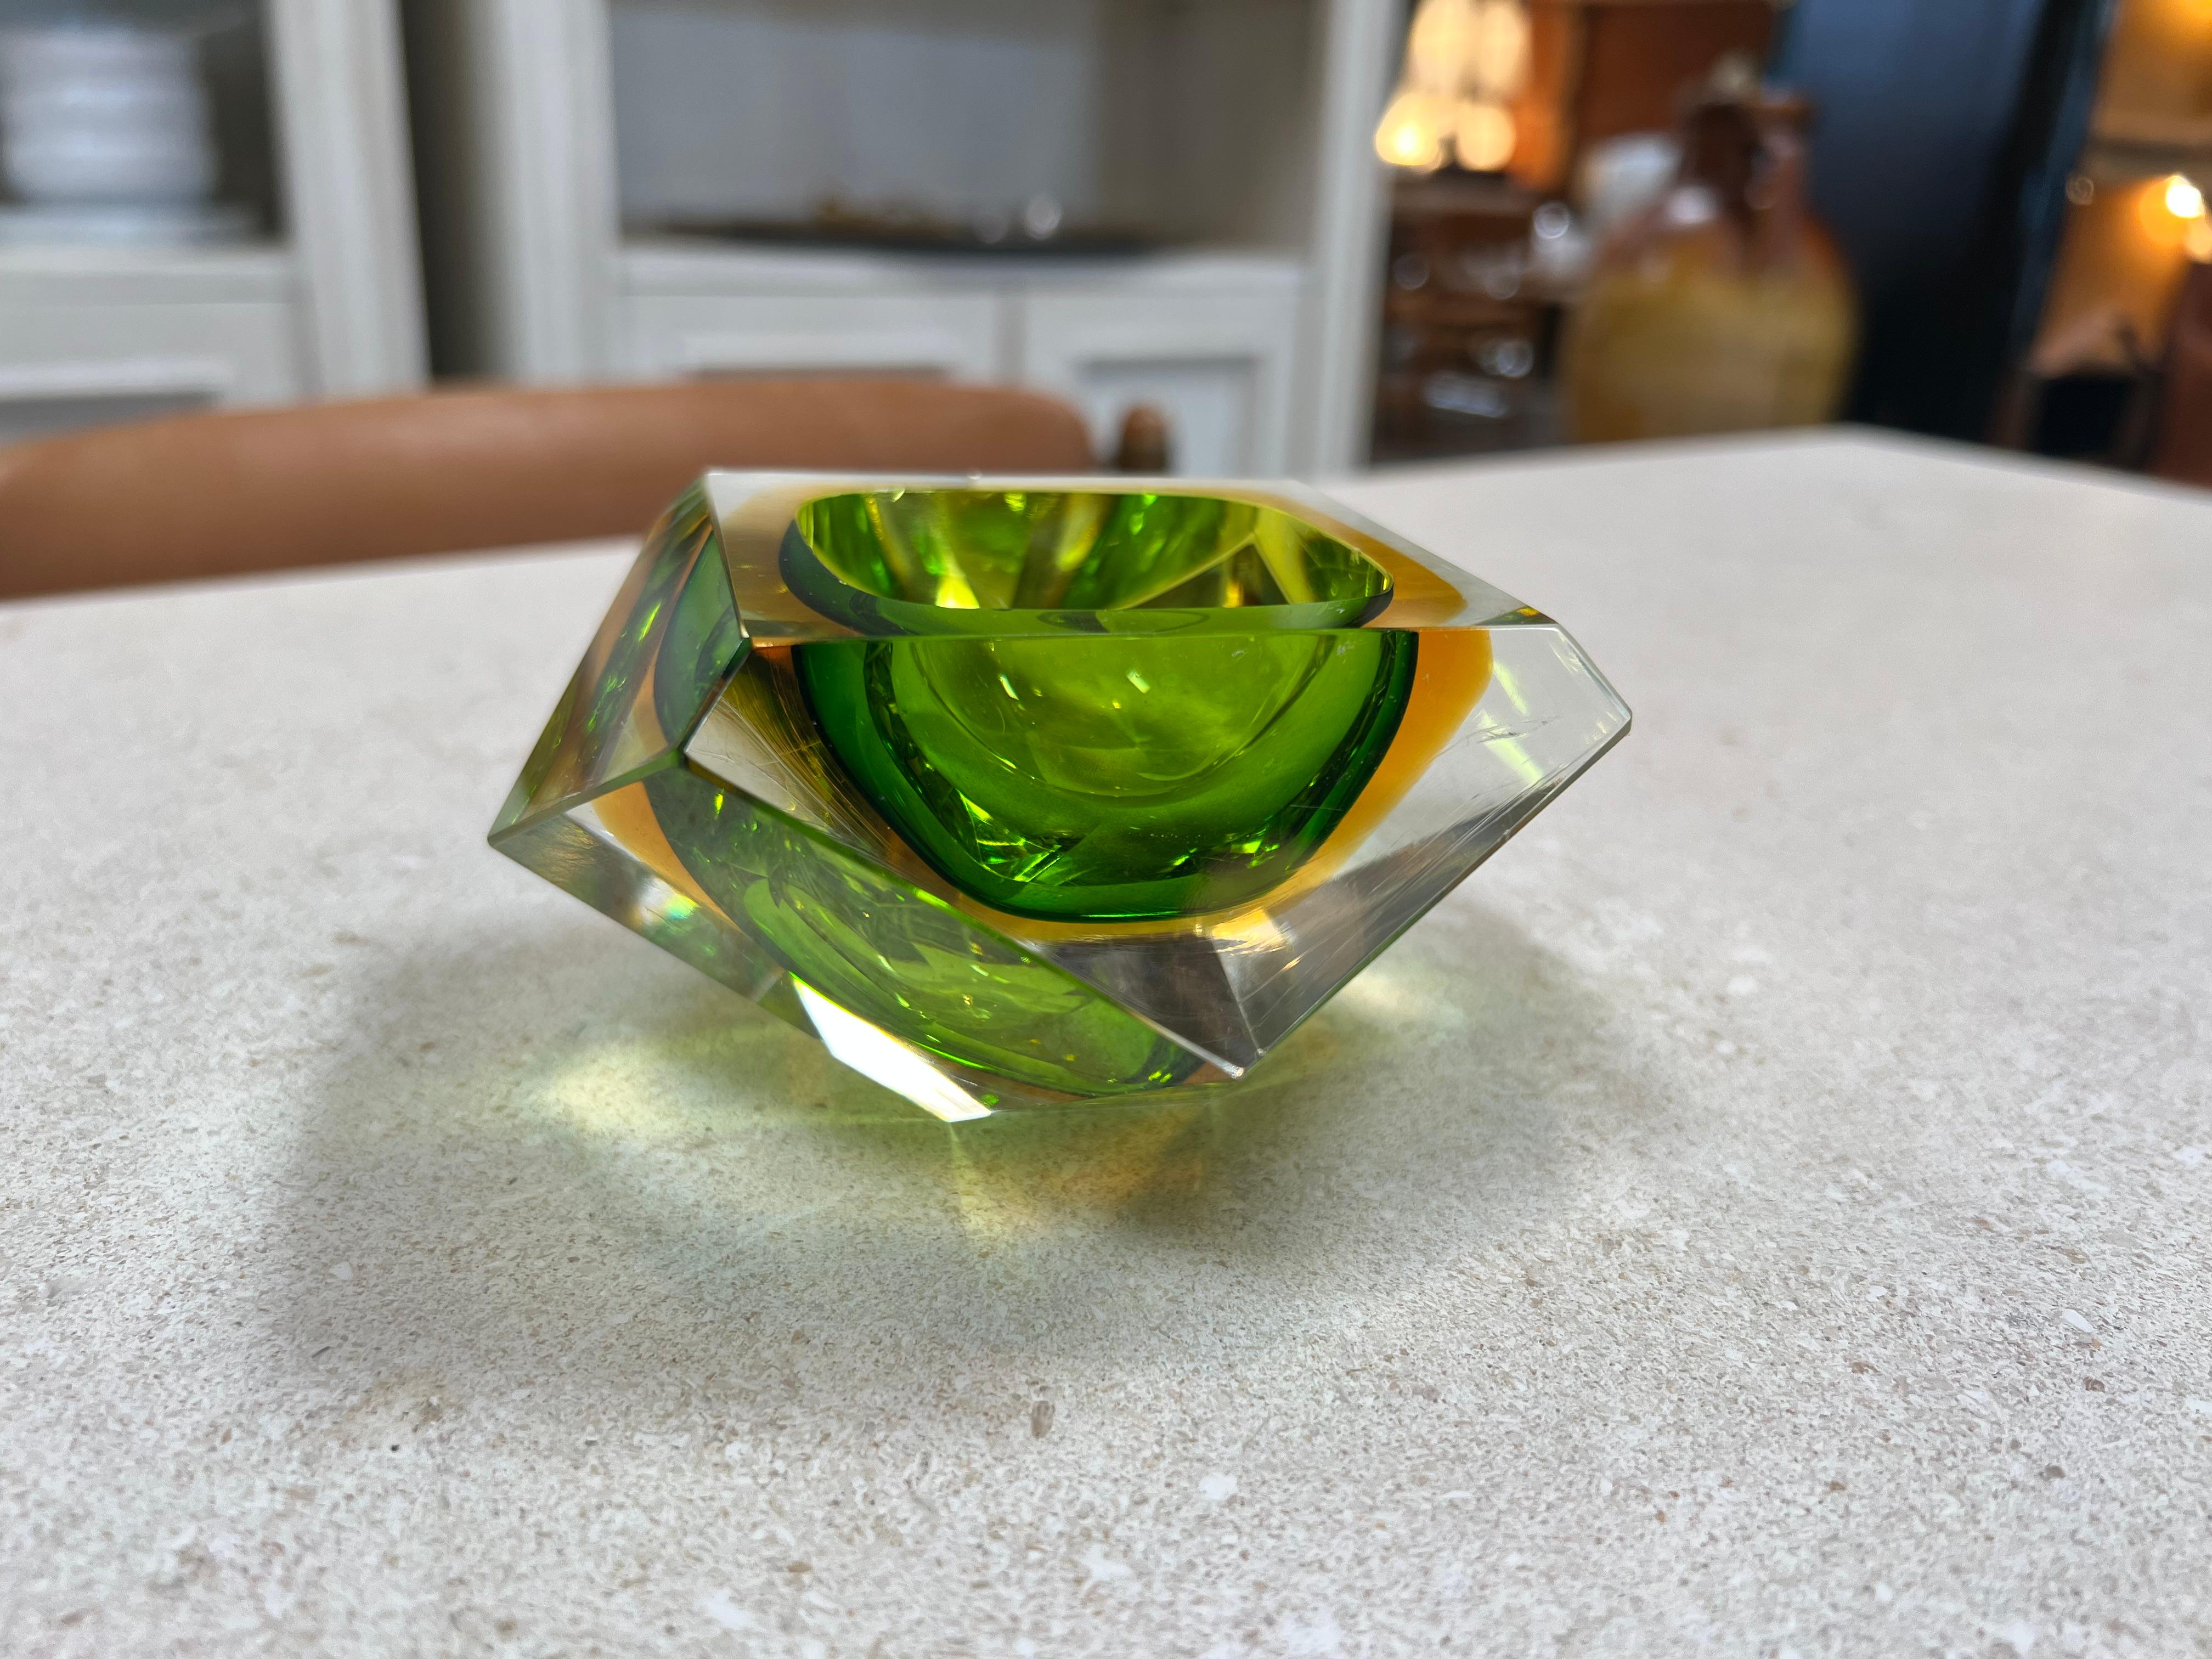 Der schöne italienische Aschenbecher aus grünem Glas aus den 1960er Jahren ist ein fesselndes Stück, das ein Gefühl von Ruhe und Raffinesse ausstrahlt. Dieser mit Sorgfalt gefertigte Aschenbecher besticht durch sein faszinierendes Design mit grün